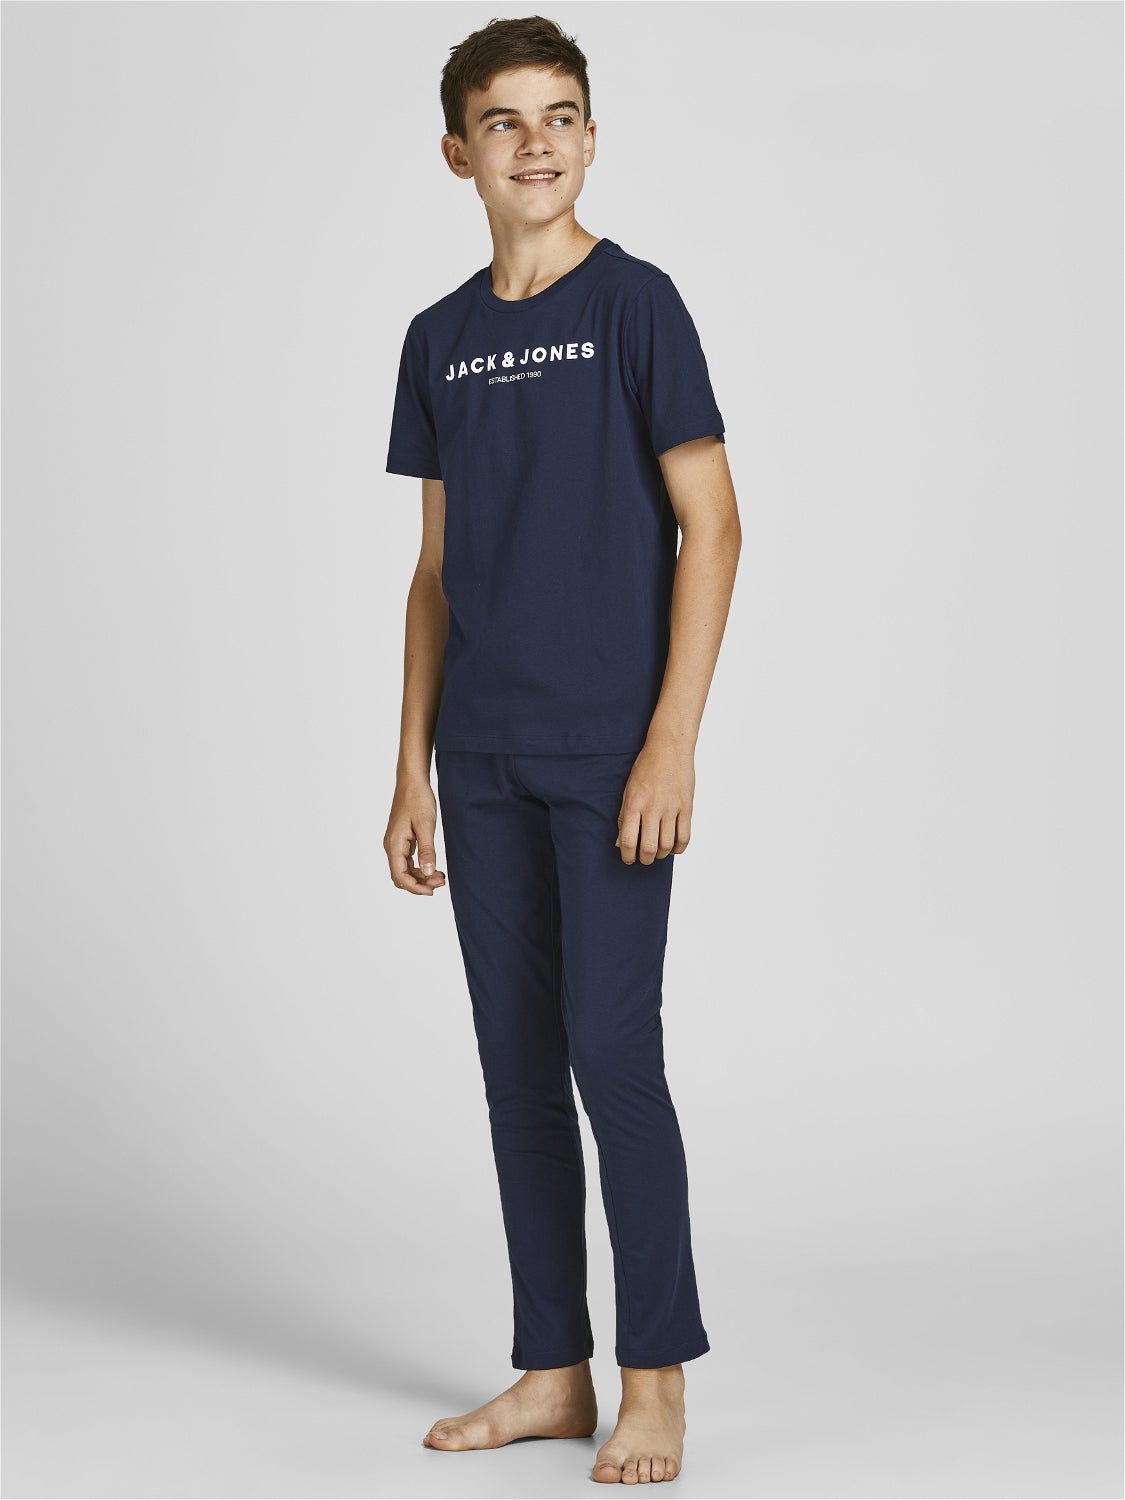 Mode & Beauty Herrenbekleidung Jack & Jones JACKARAS TRUNKS 5 PACK  Gr:XL Pants  Blau 